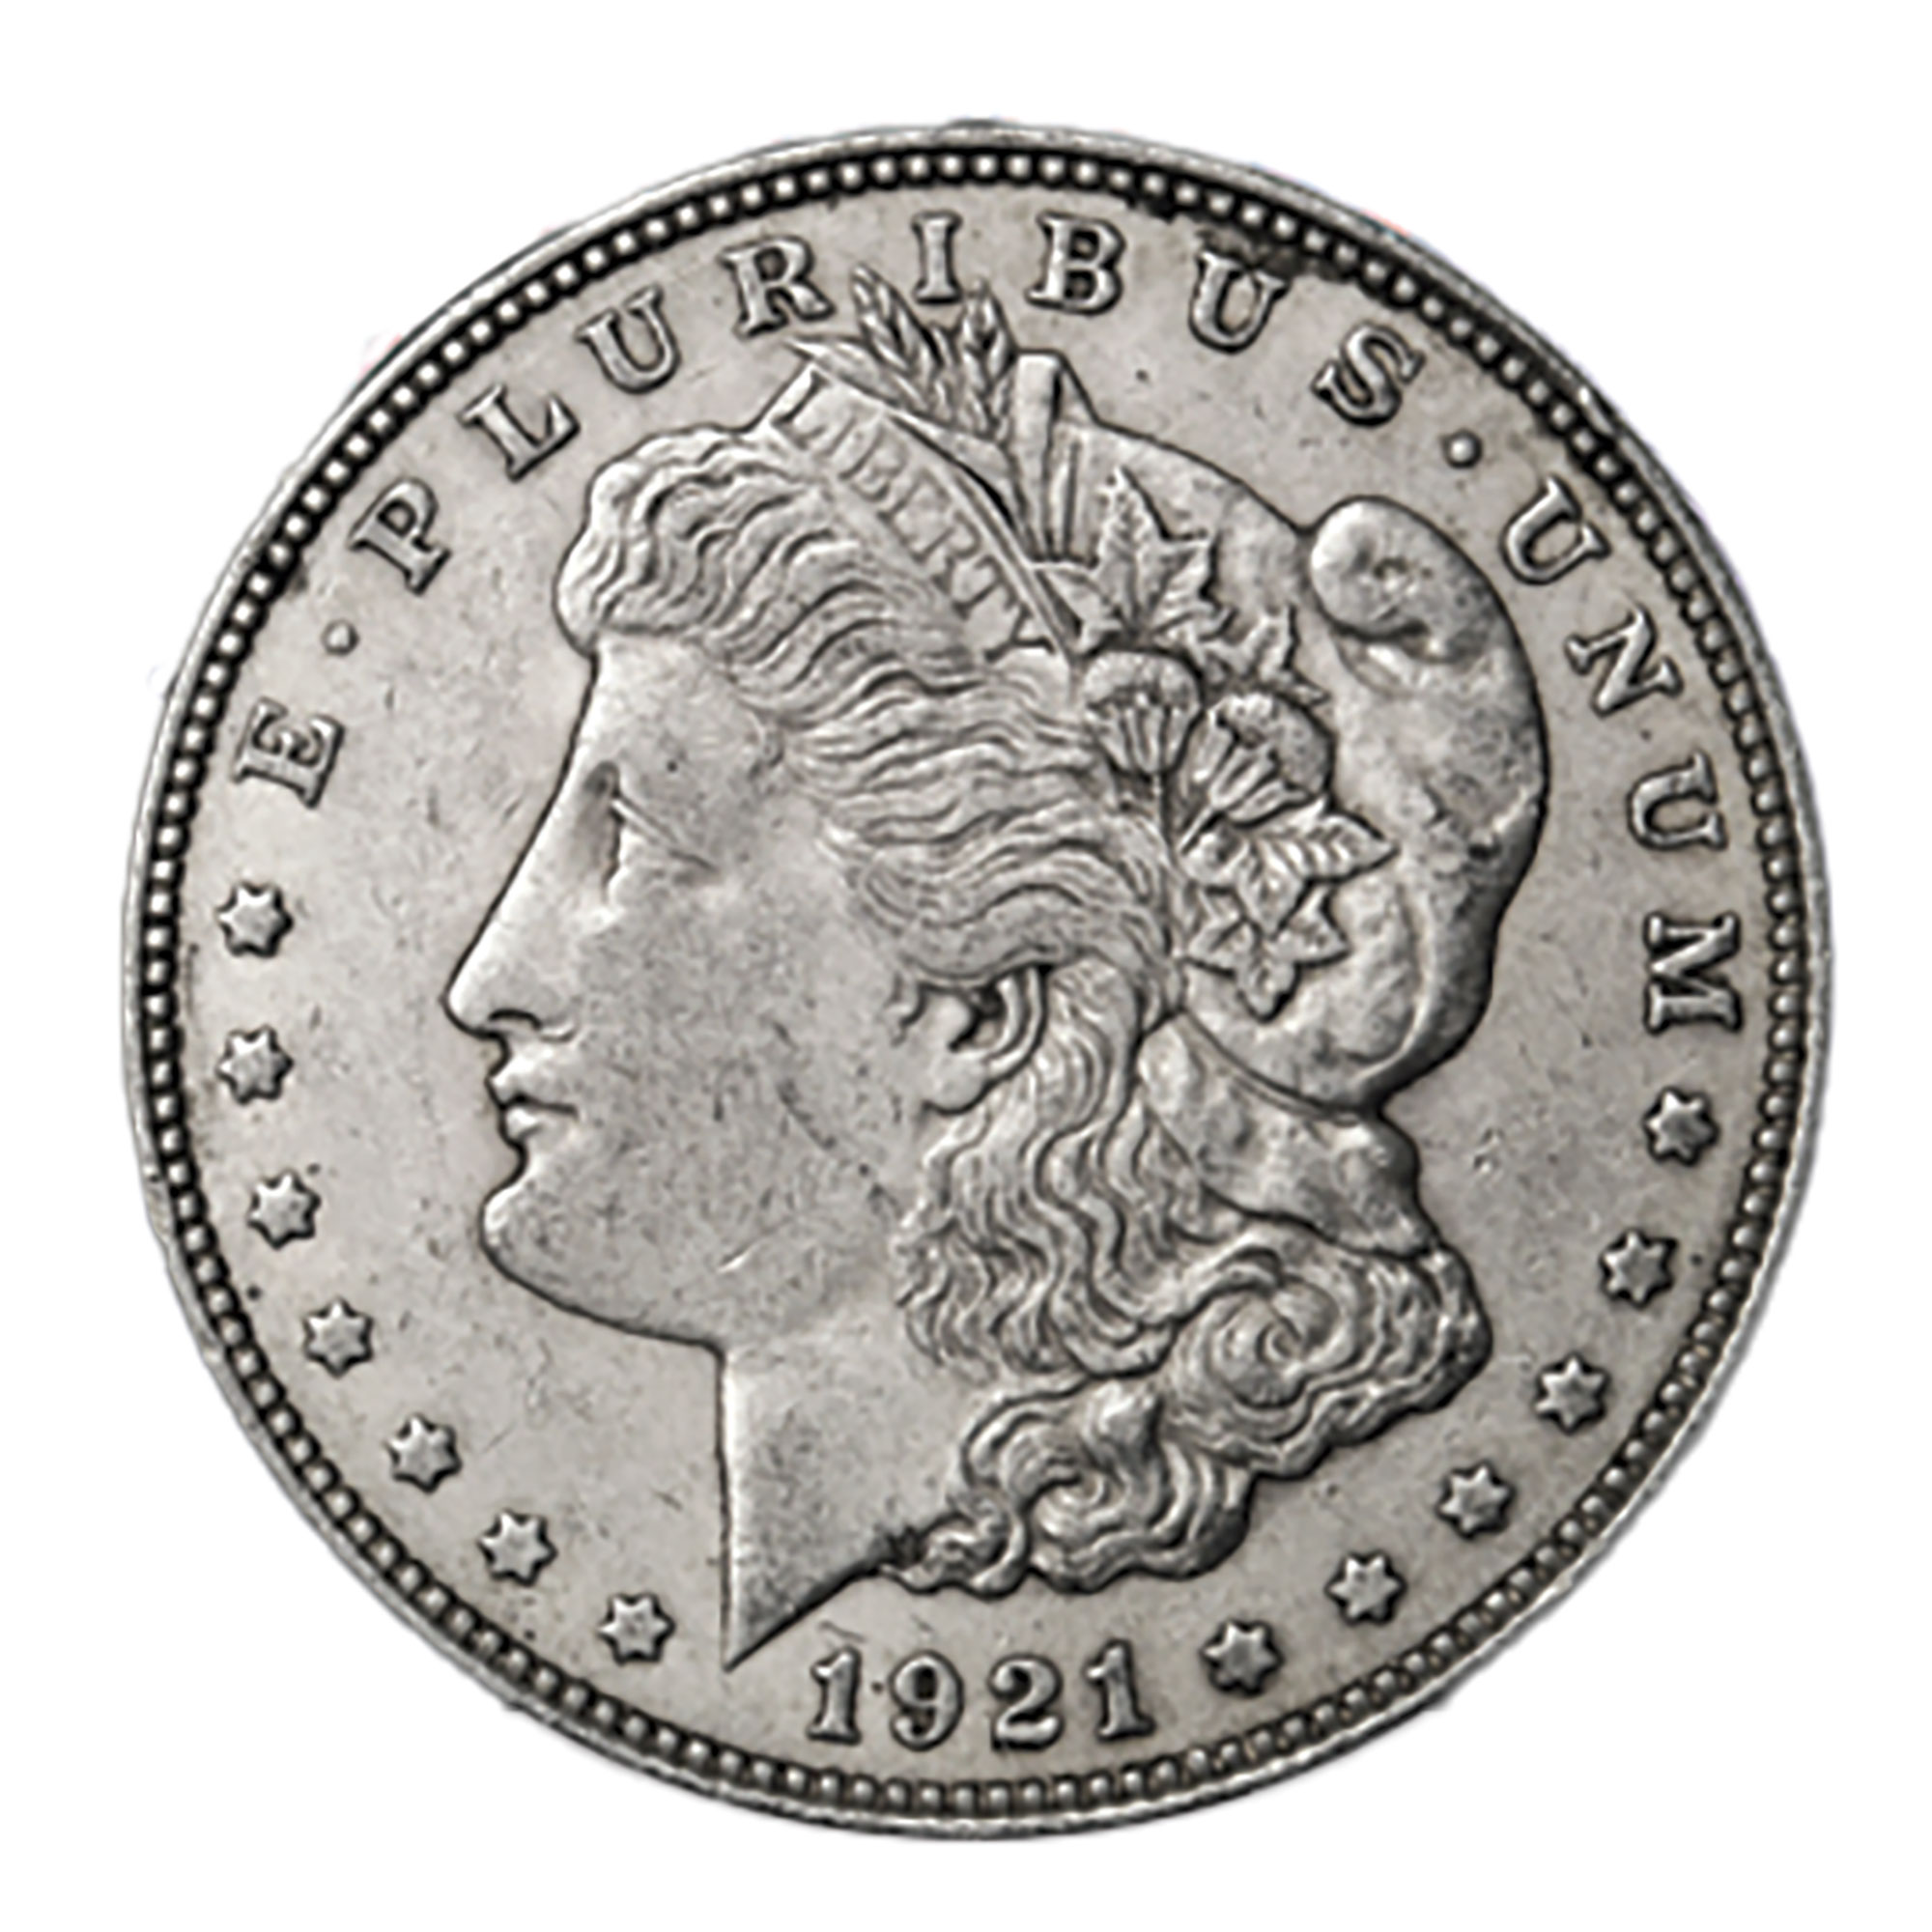 The Matthew Mint 100th Anniversary Morgan Dollar